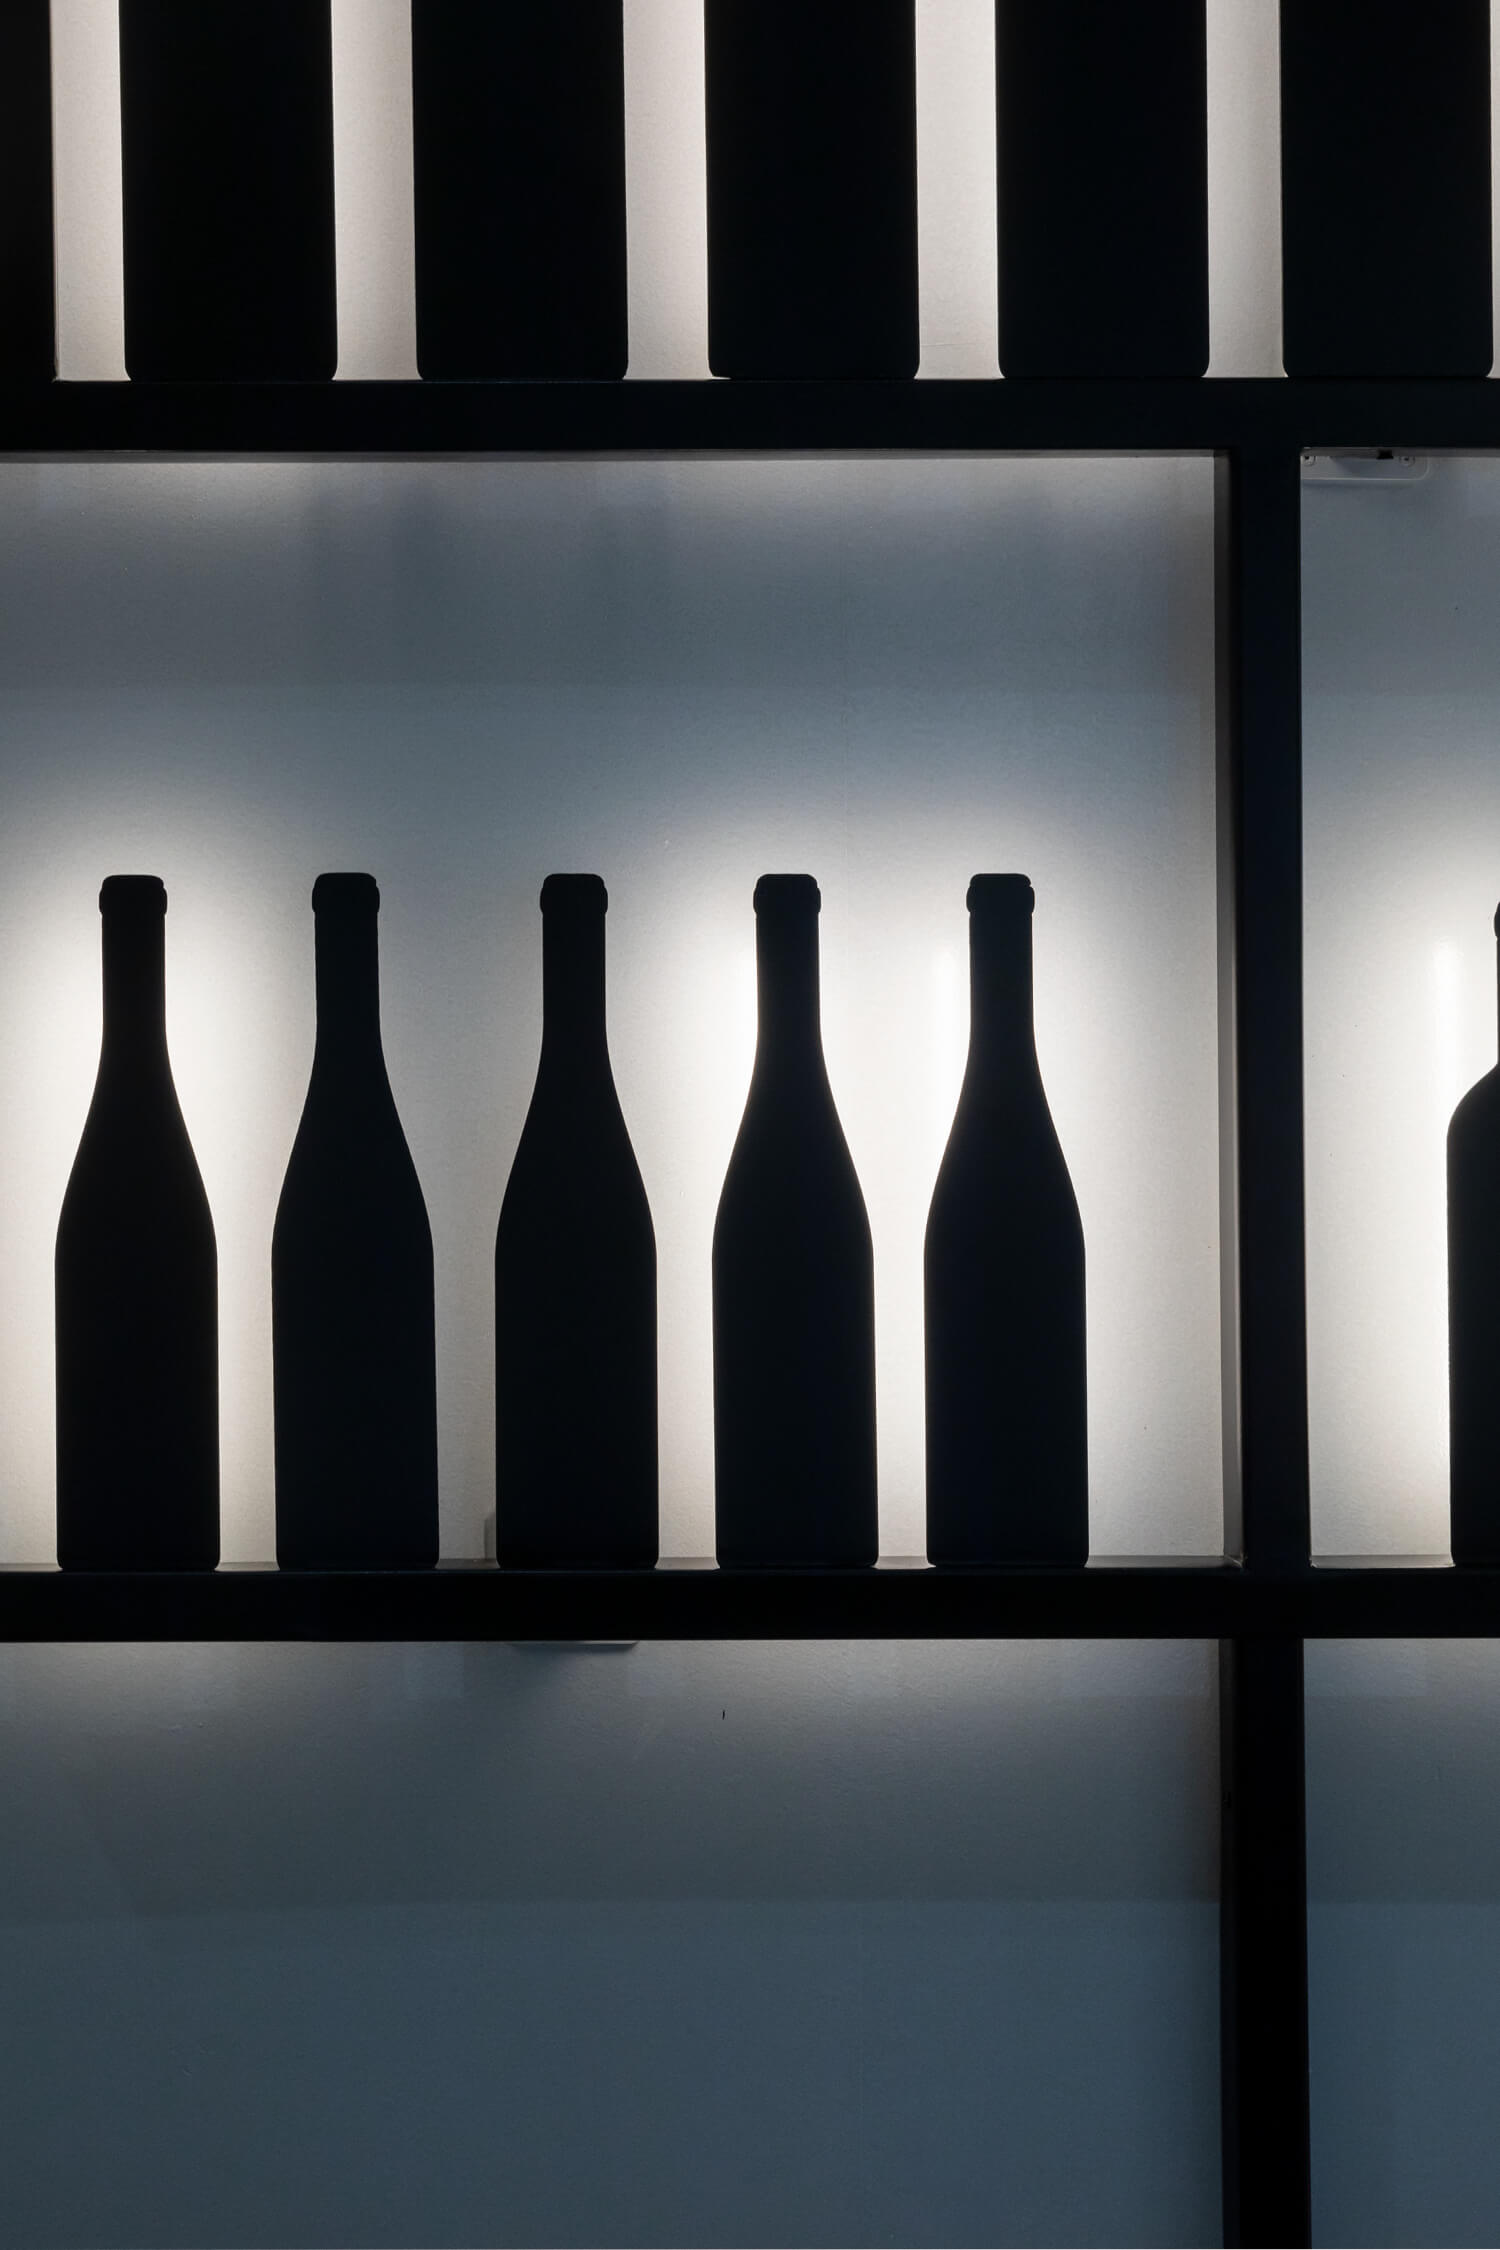 Zoom sur le mur dessiné par IchetKar, bouteilles et étagères en metal noir, rétro éclairées façon ombre chinoise